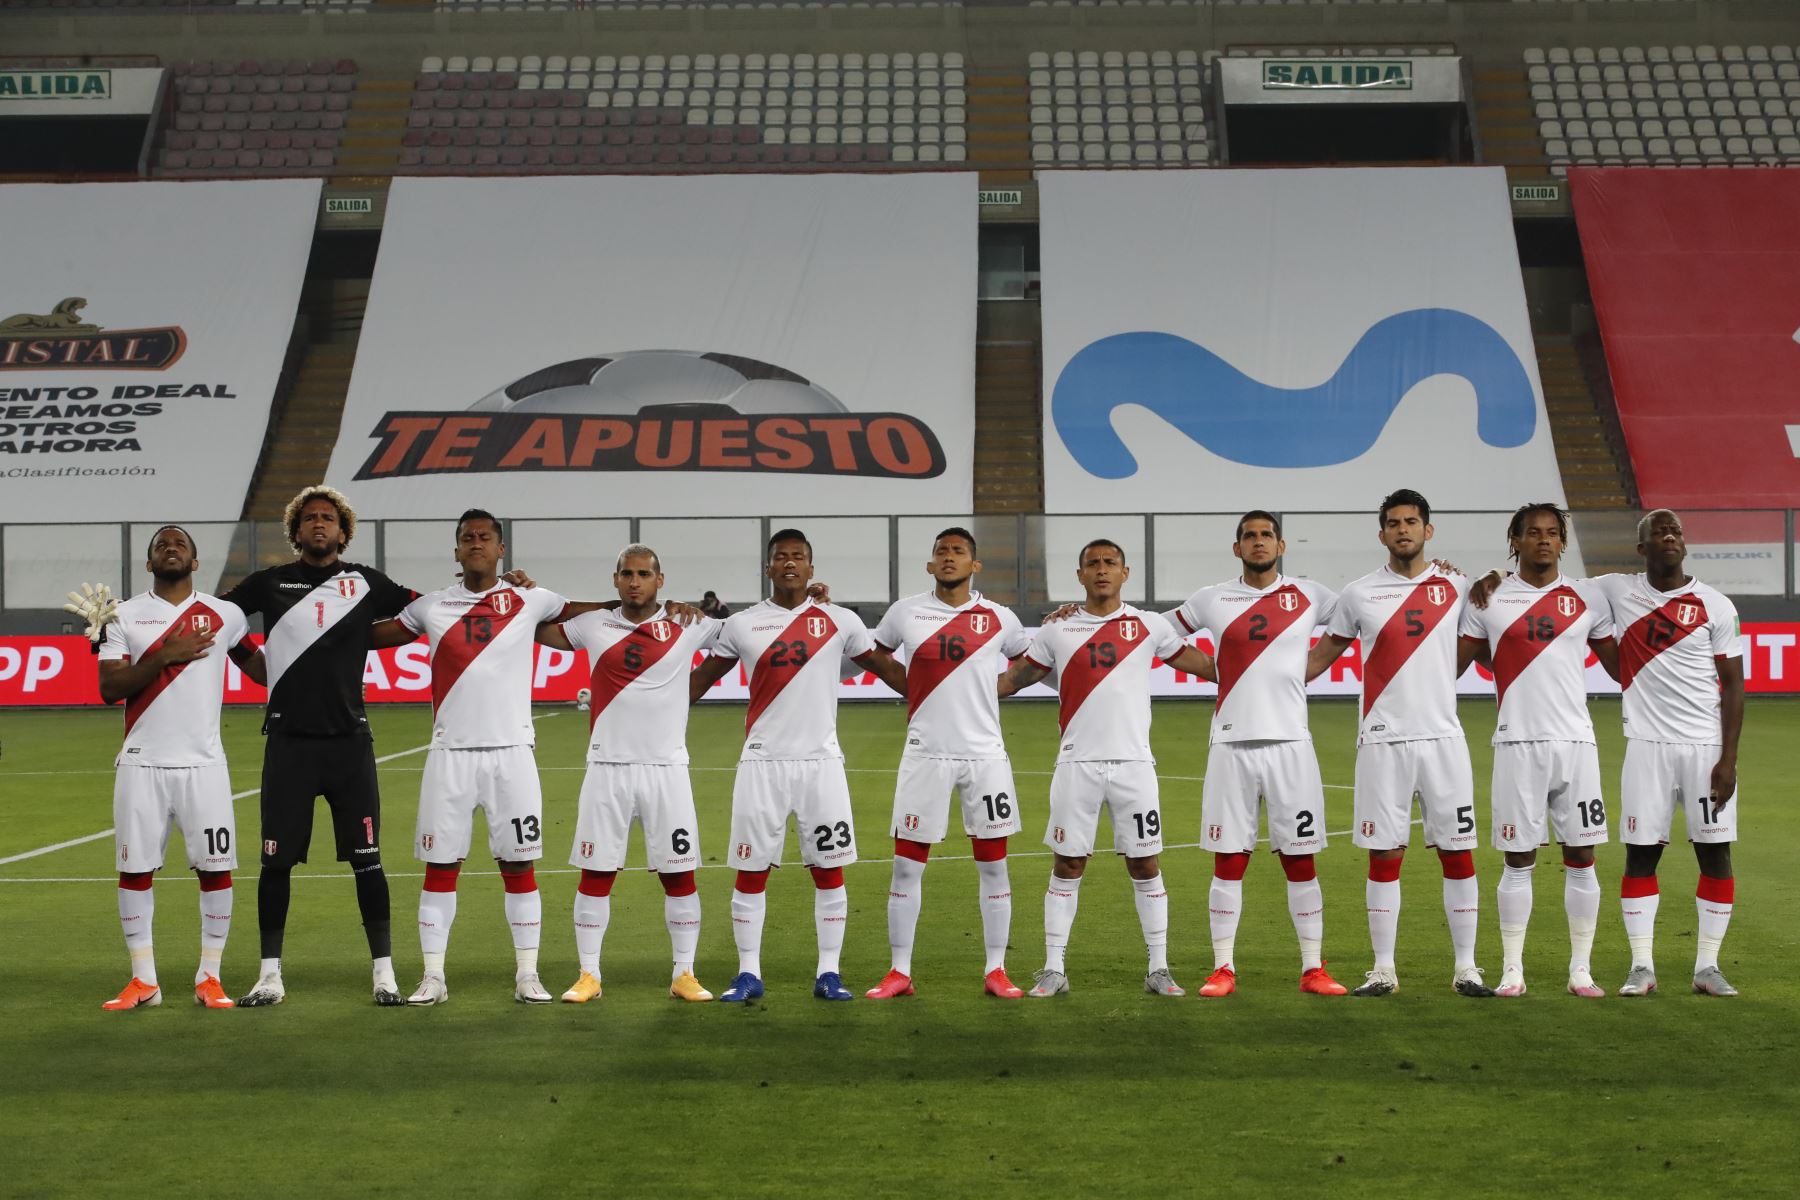 Perú enfrenta a Brasil por la segunda fecha de las eliminatorias rumbo a Qatar 2022. Selección nacional entonando el himno patrio. 

Foto: Pool/FPP